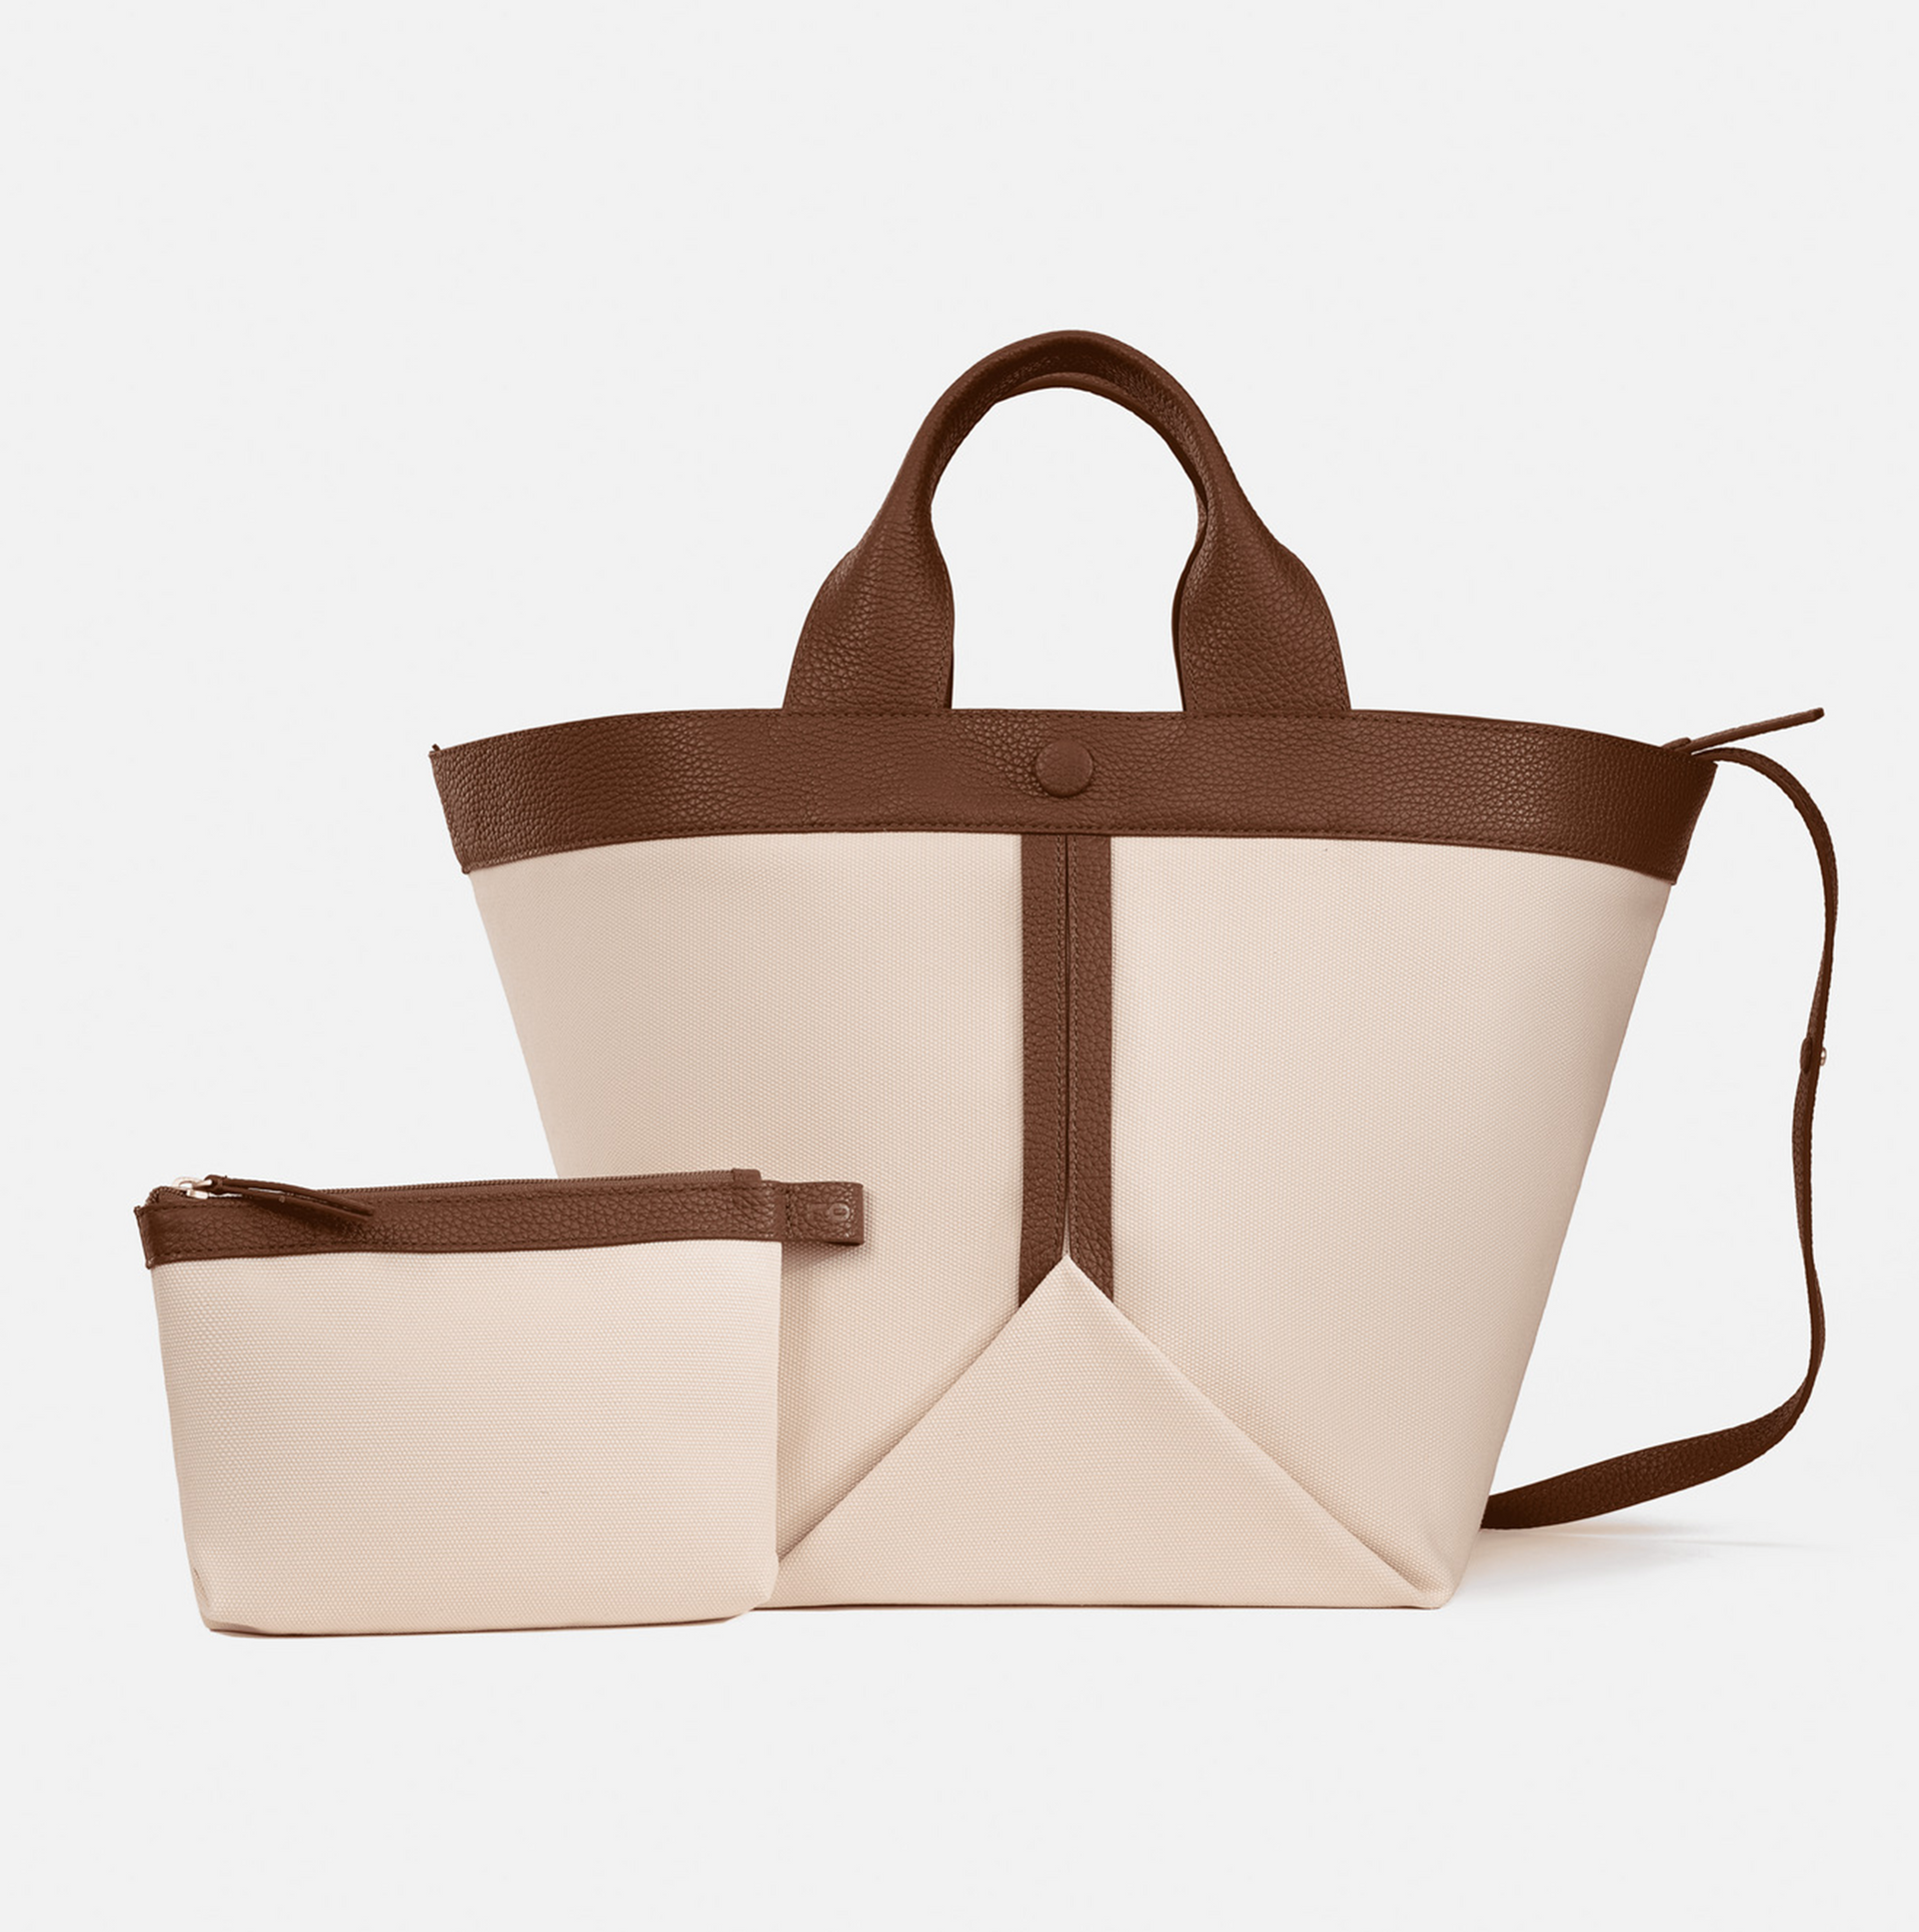 4cm Wide Colorful Leather Purse Strapremovable Shoulder Bag